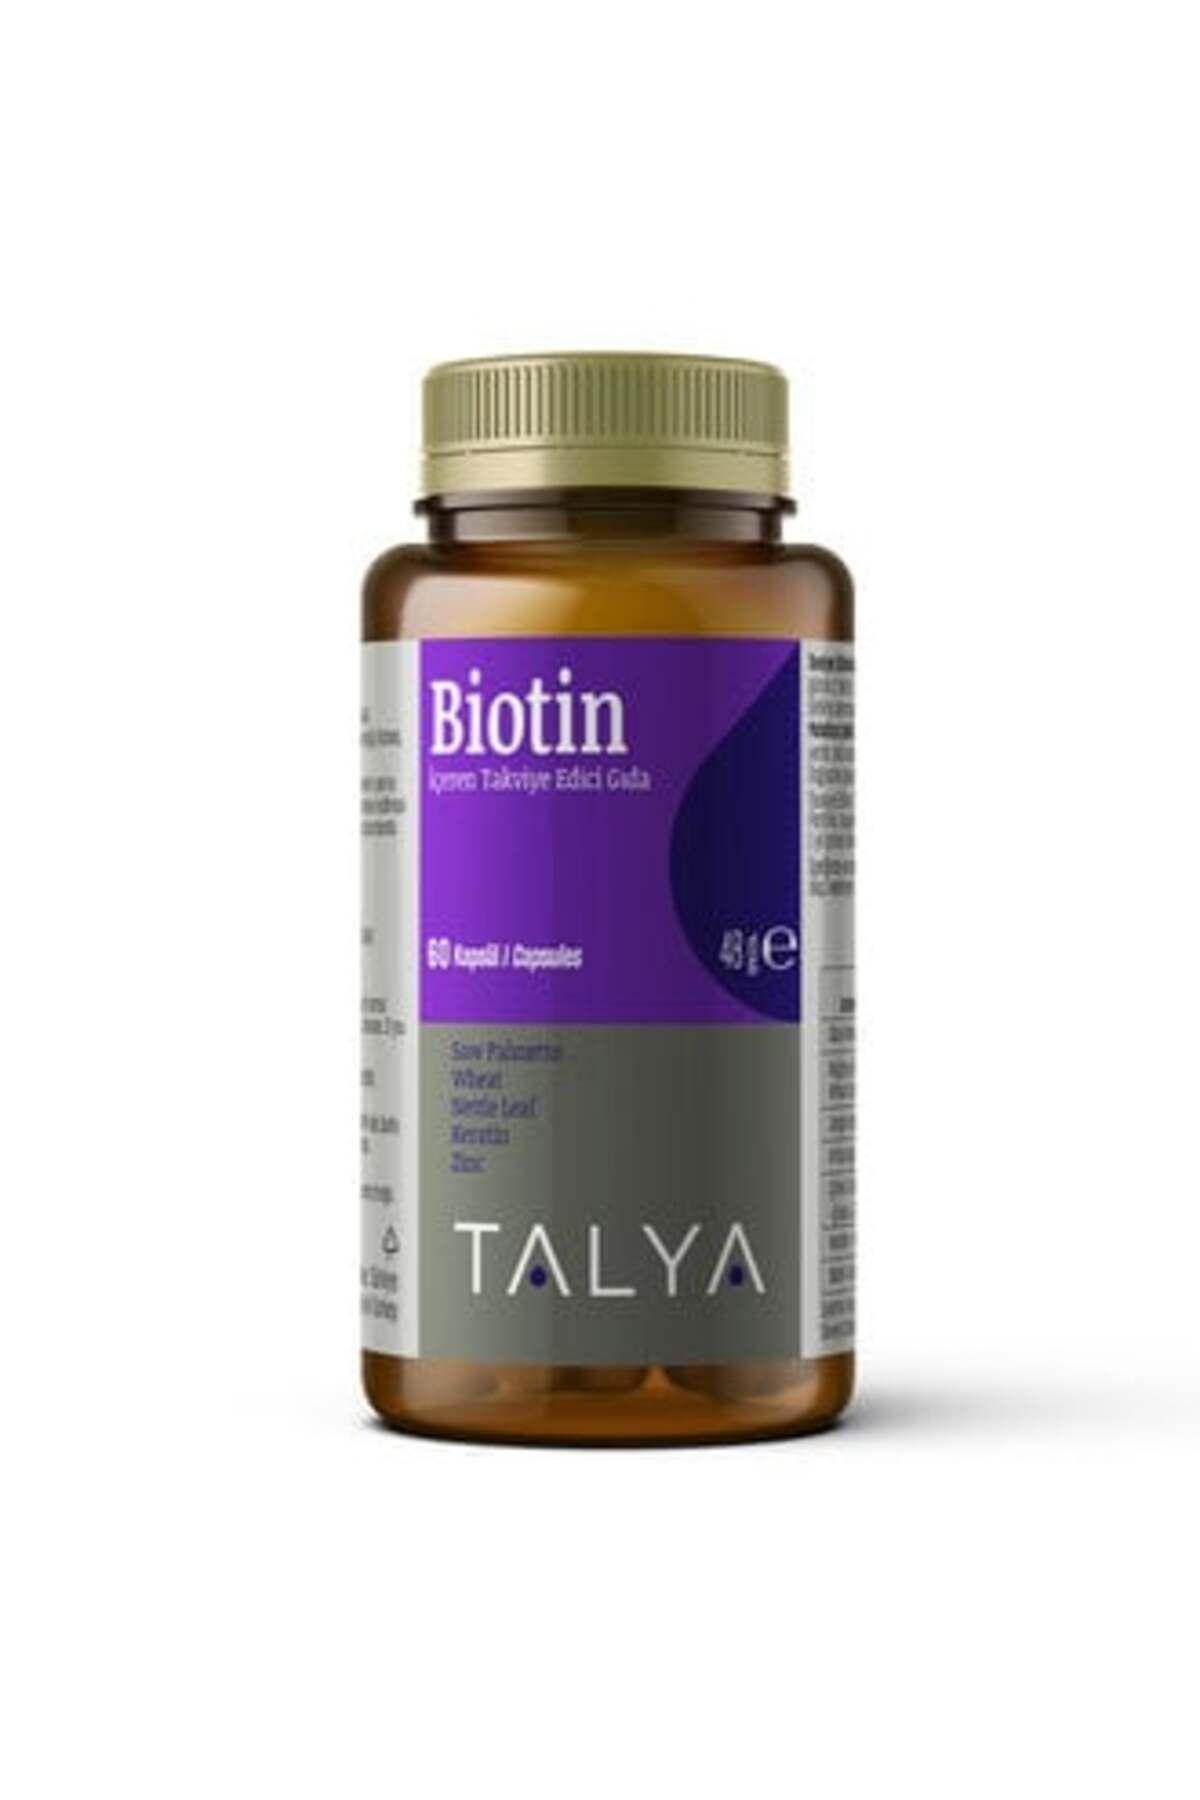 Talya Biotin İçeren Takviye Edici Gıda 60 Kapsül 48 G ( 2 ADET )